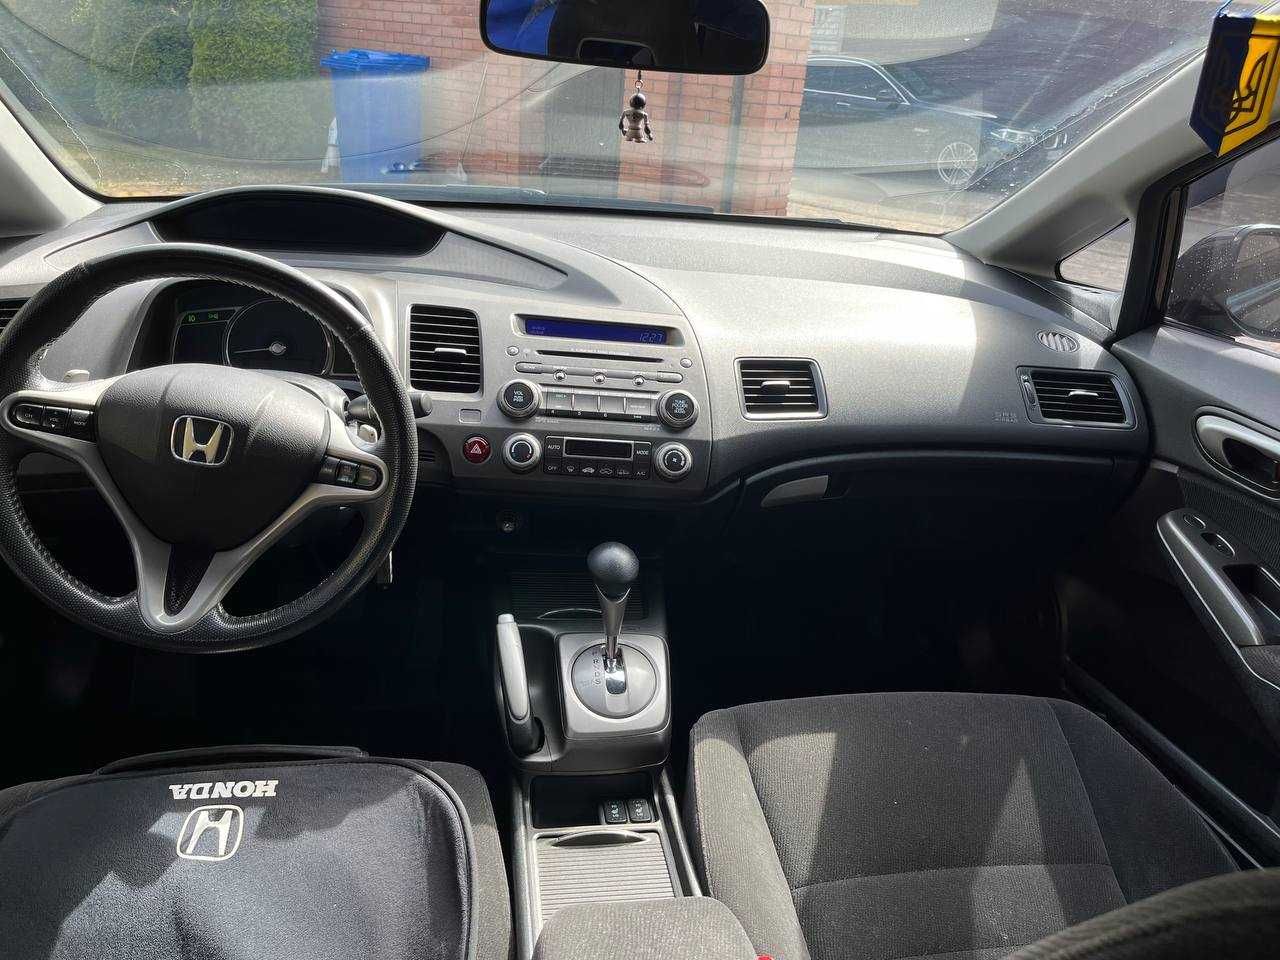 Honda Civic 2007 4D ES VIII покоління • 1.8 i-VTEC AT (140 к.с.)